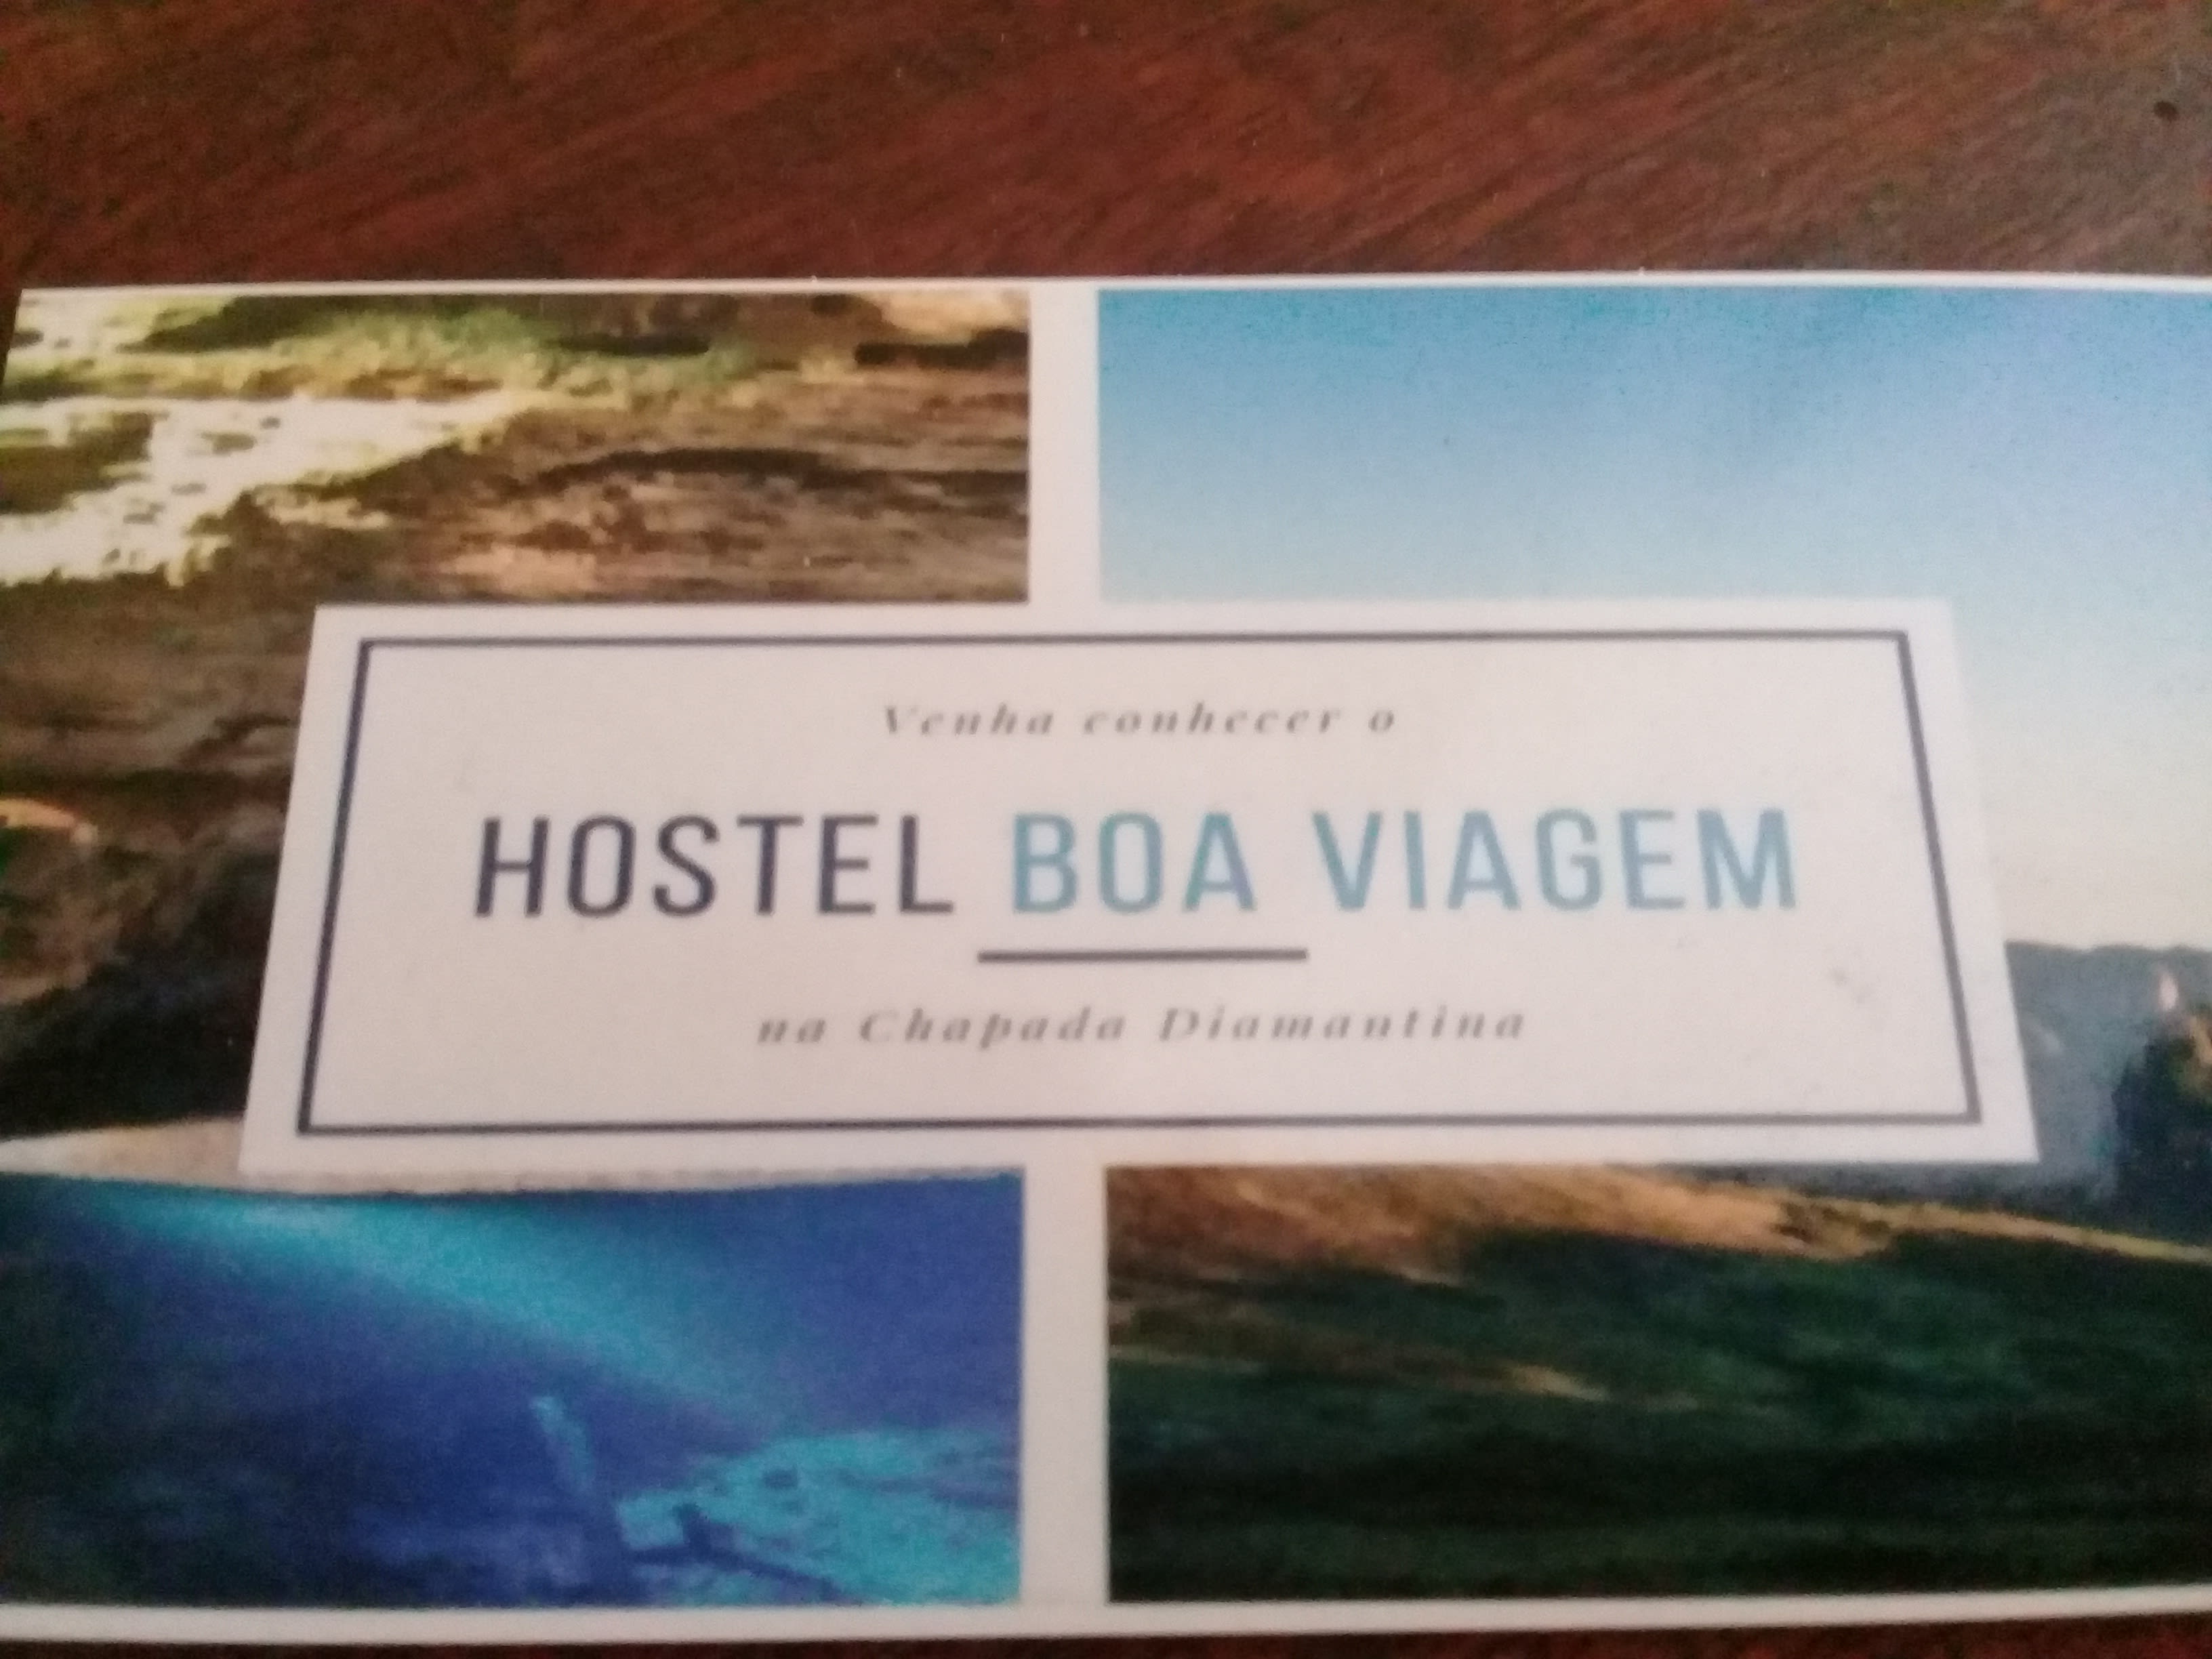 Hostel Boa Viagem